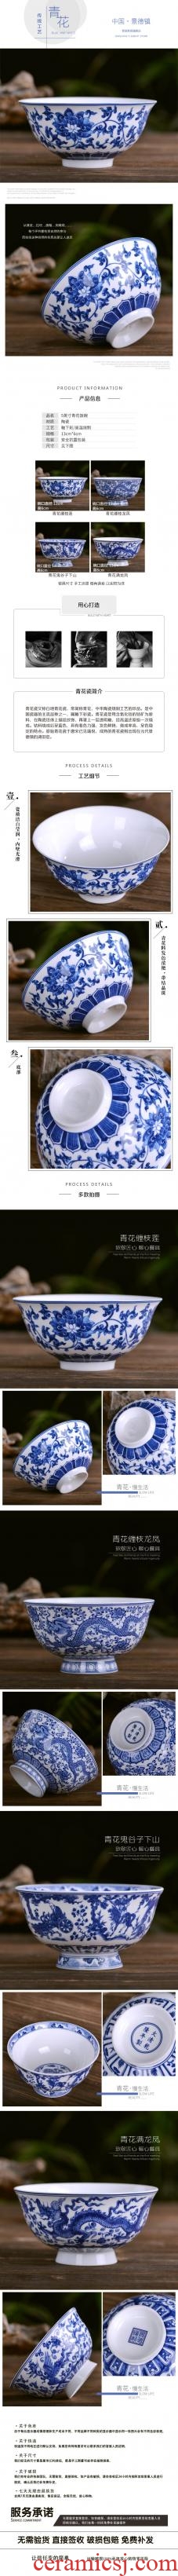 Blue and white porcelain bowls 5 inches ceramic bowl glair rice bowls jingdezhen bone porcelain tableware rainbow noodle bowl bowl bowl dish